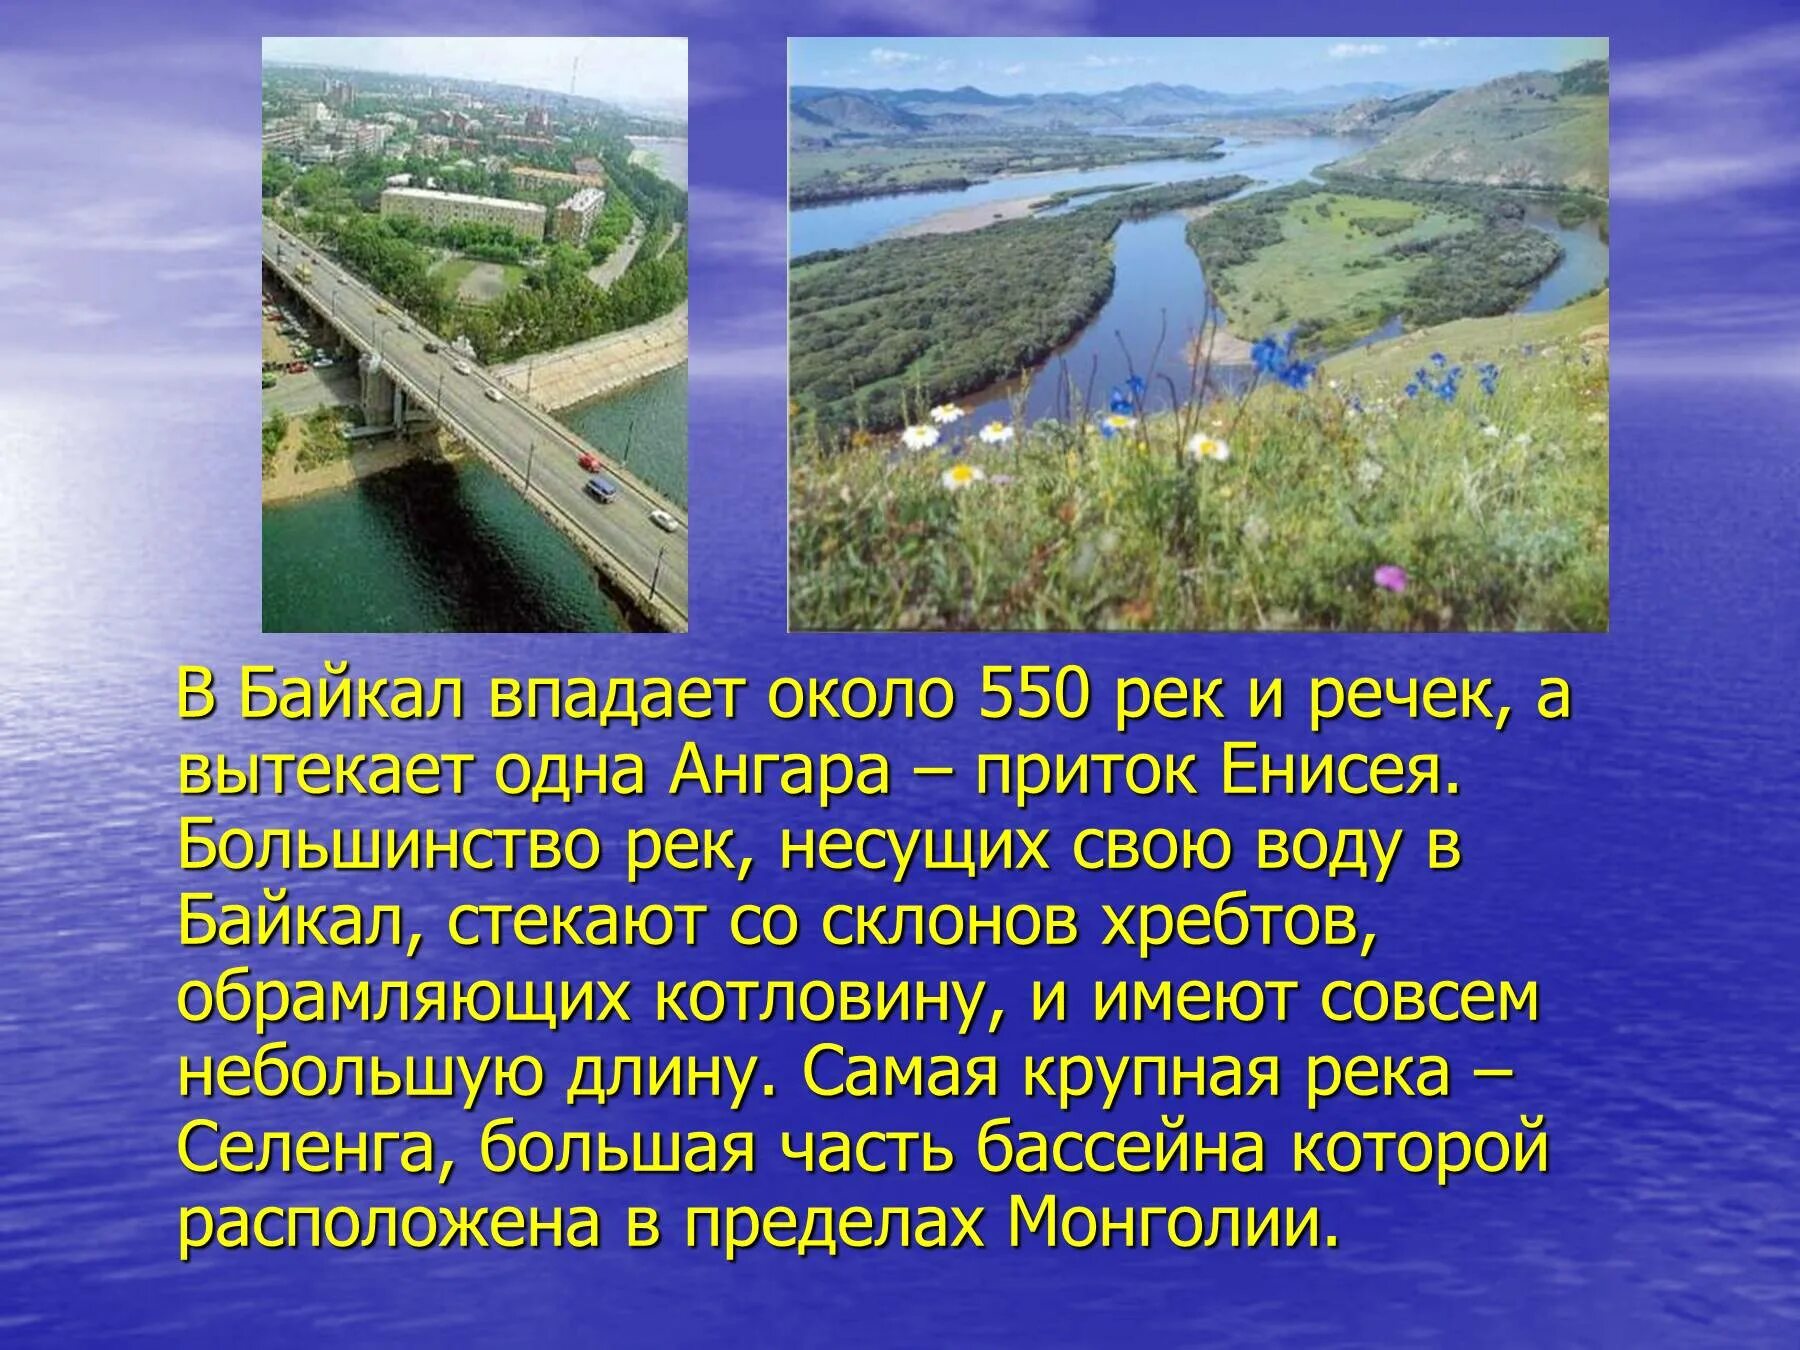 Самый крупный приток енисея. Ангара впадает в Байкал. Река Ангара впадает в Байкал. Реки впадающие в Байкал. Ангара и Байкал впадает вытекает.